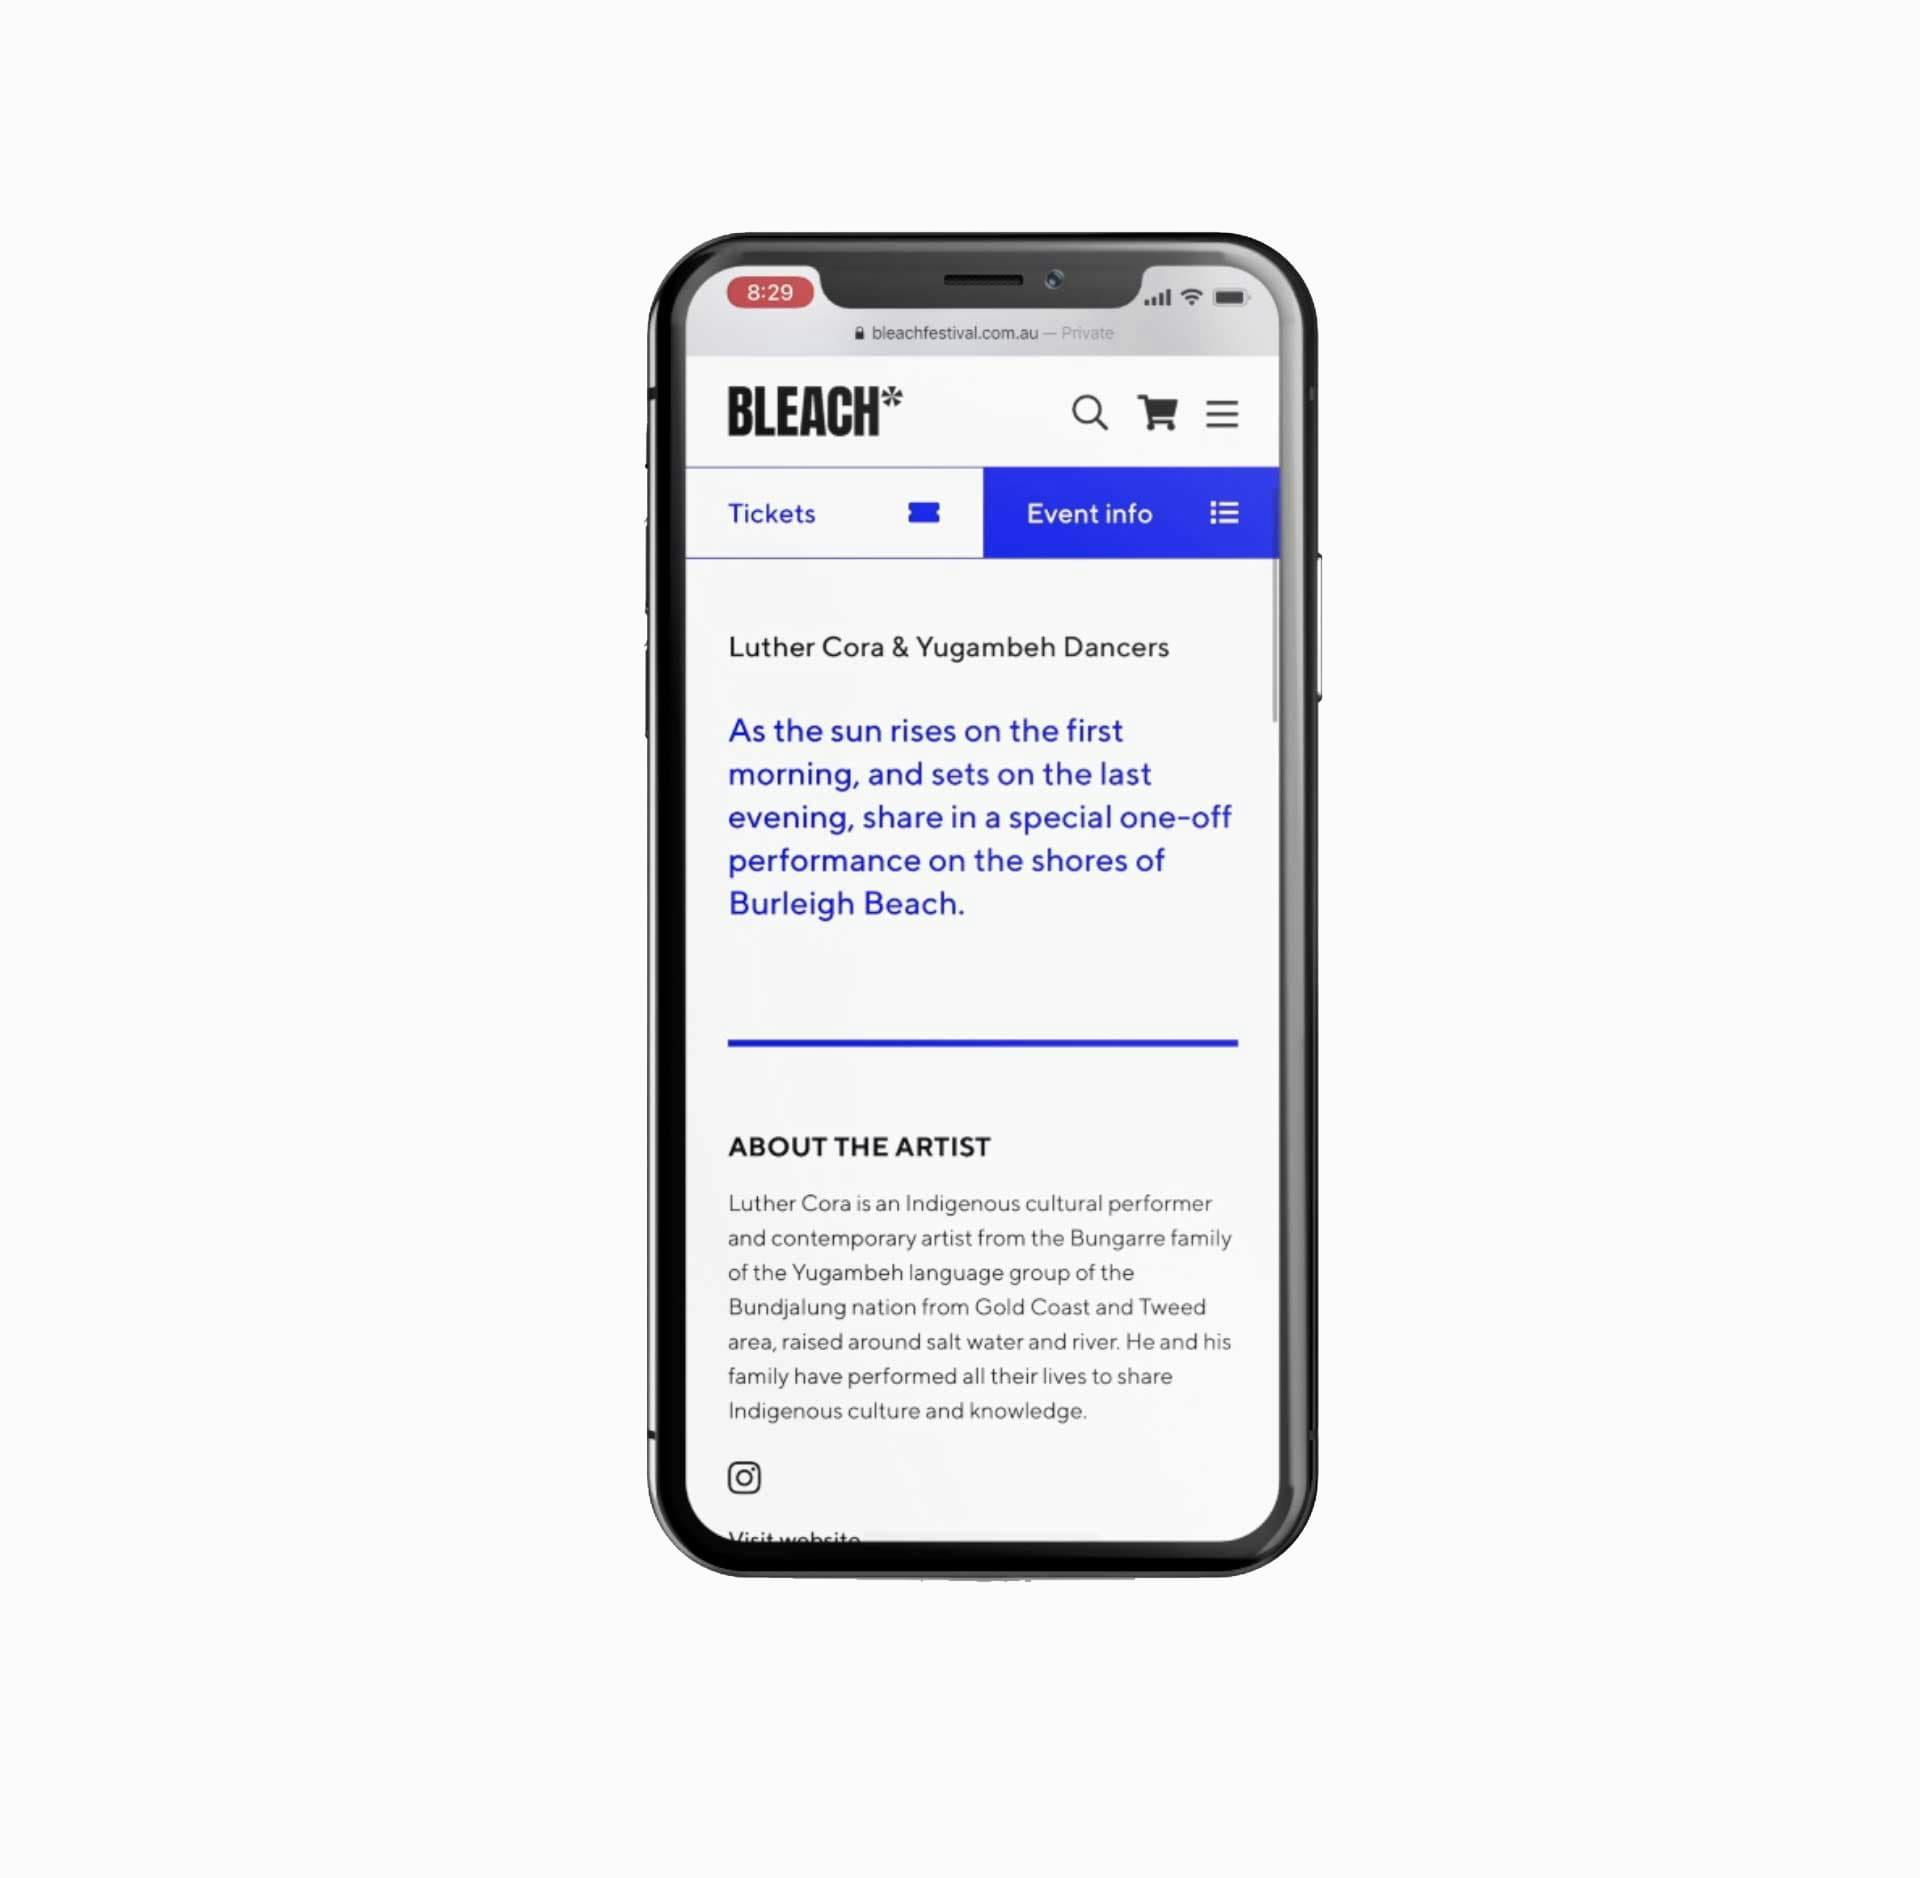 Bleach* Festival website mobile on mobile phone